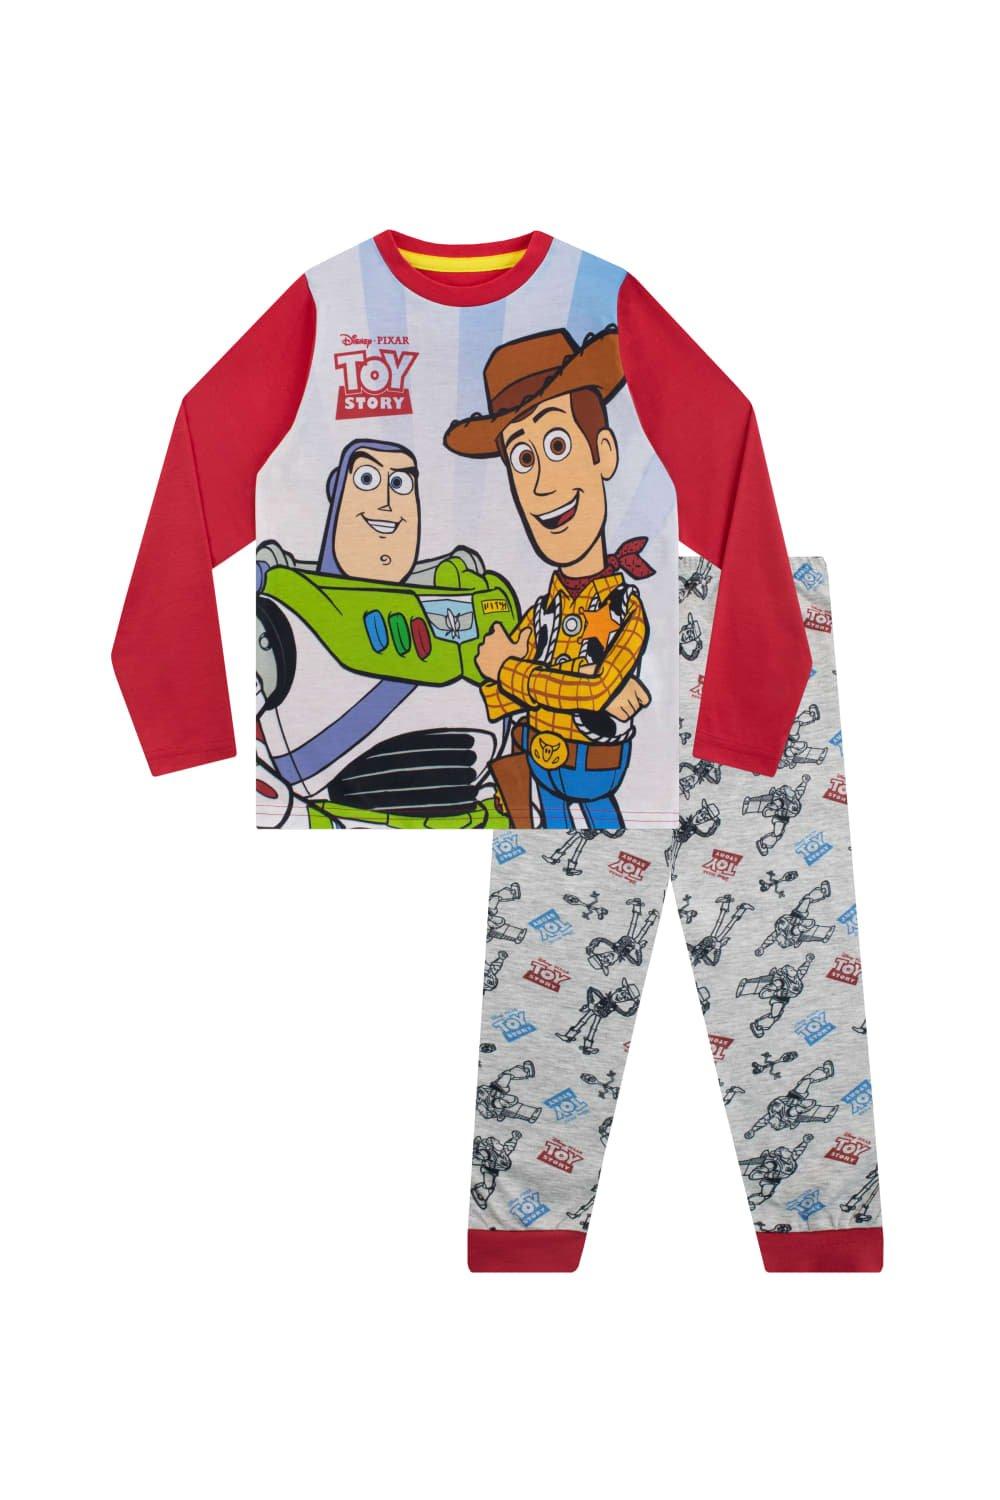 Toy Story Woody and Buzz Lightyear Pyjamas